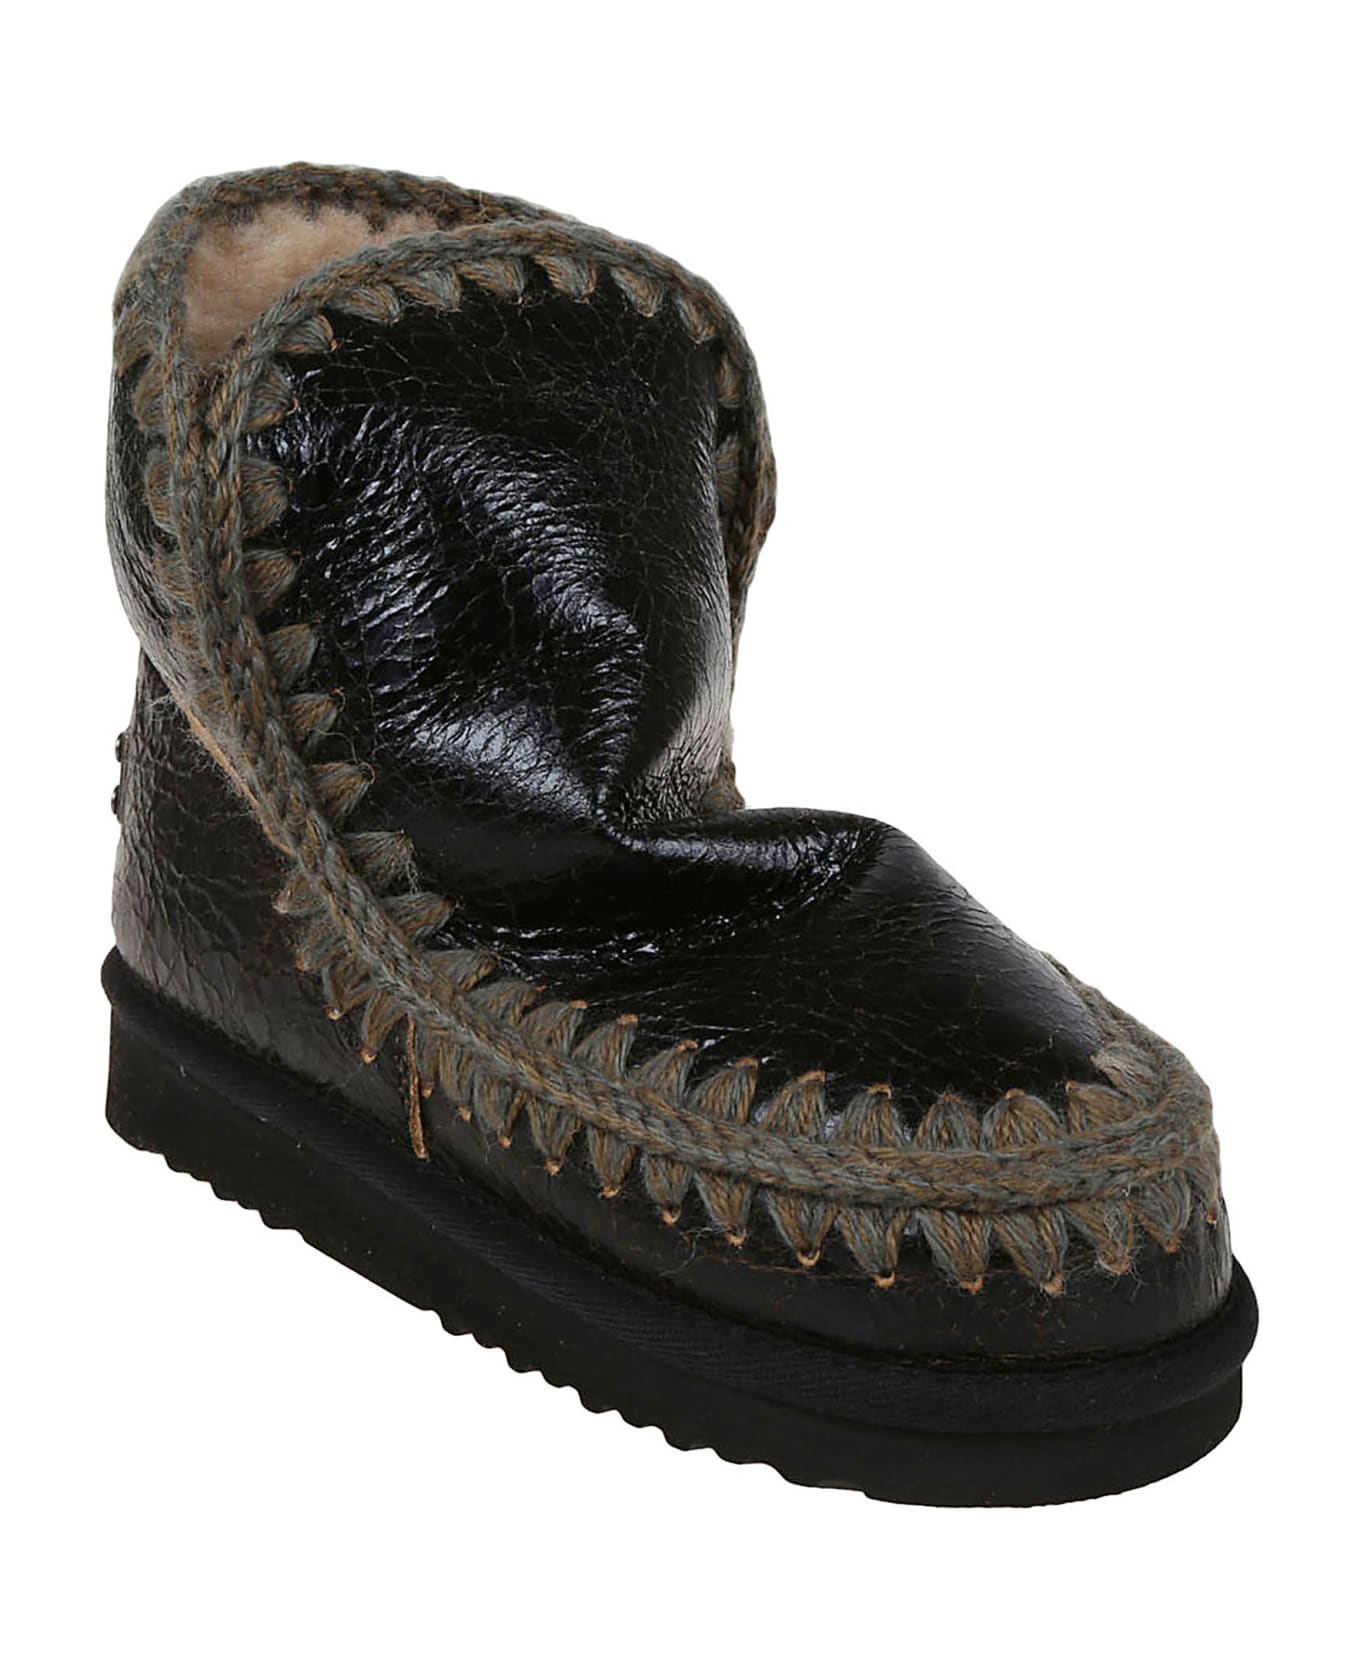 Mou Eskimo Boot 18cm - Wrsdkb Wrinkled Shiny Dark Brown